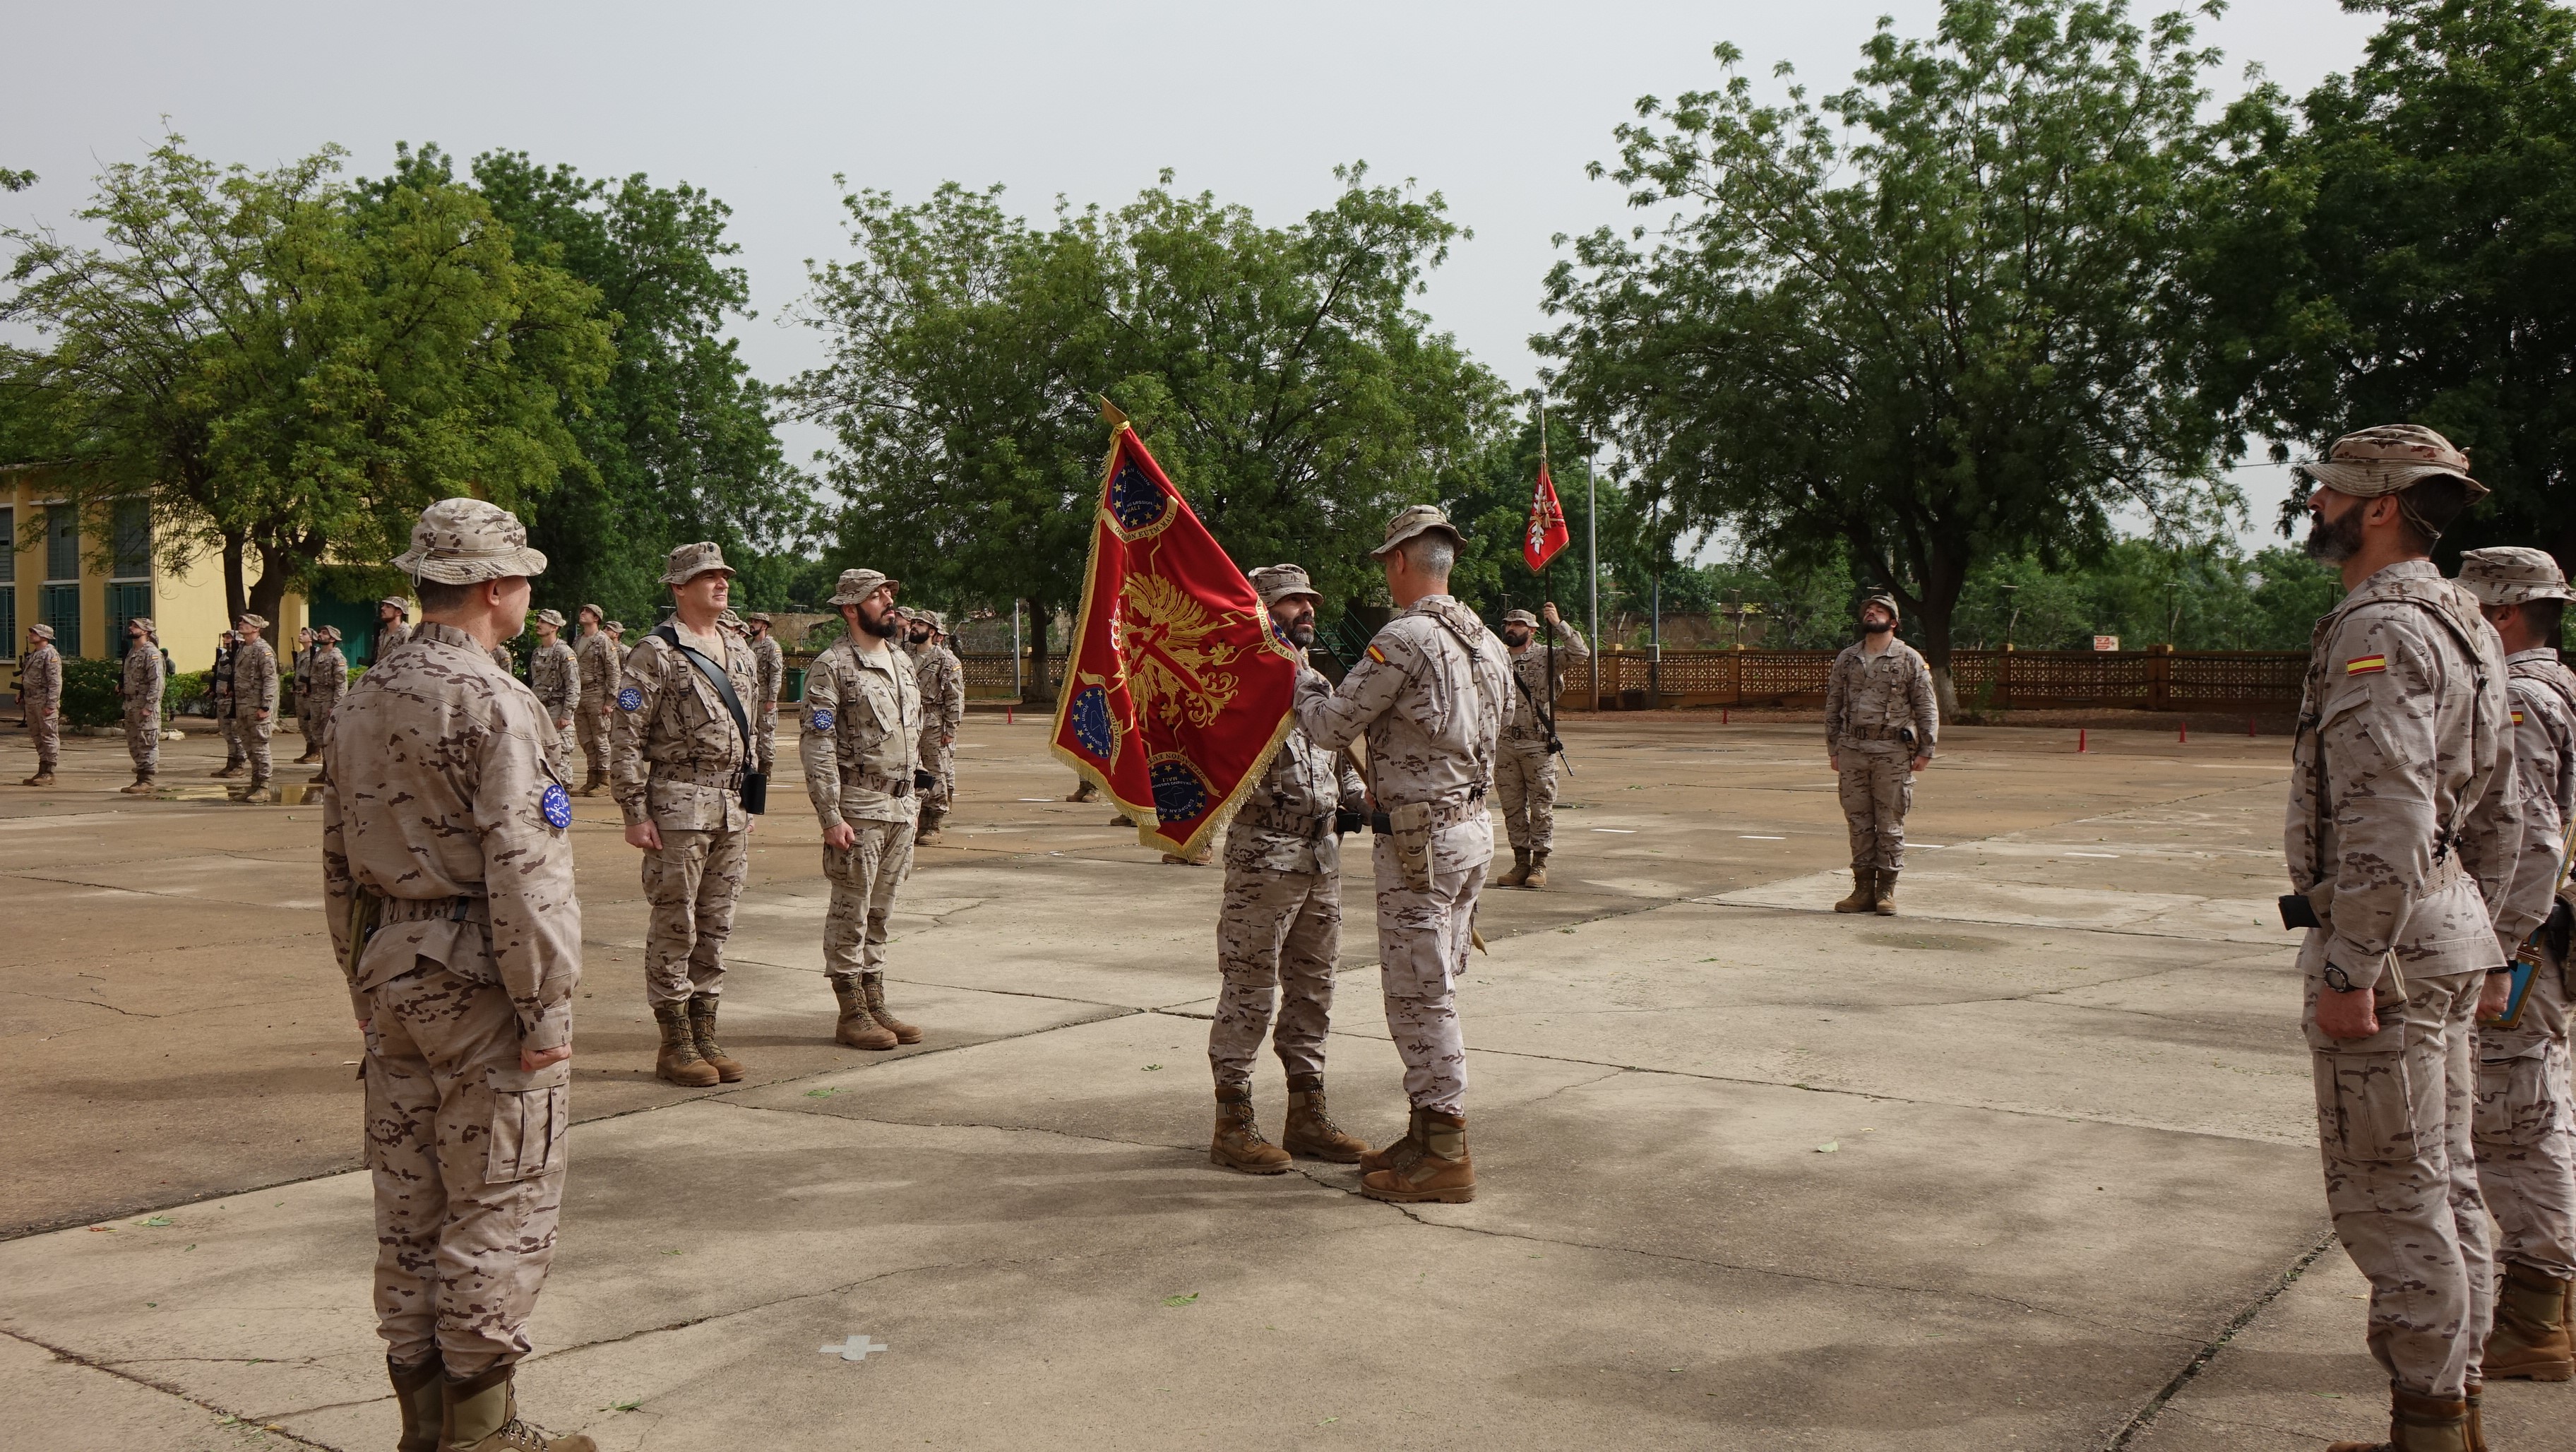 La Legión vuelve al formar el grueso del contingente en EUTM Malí